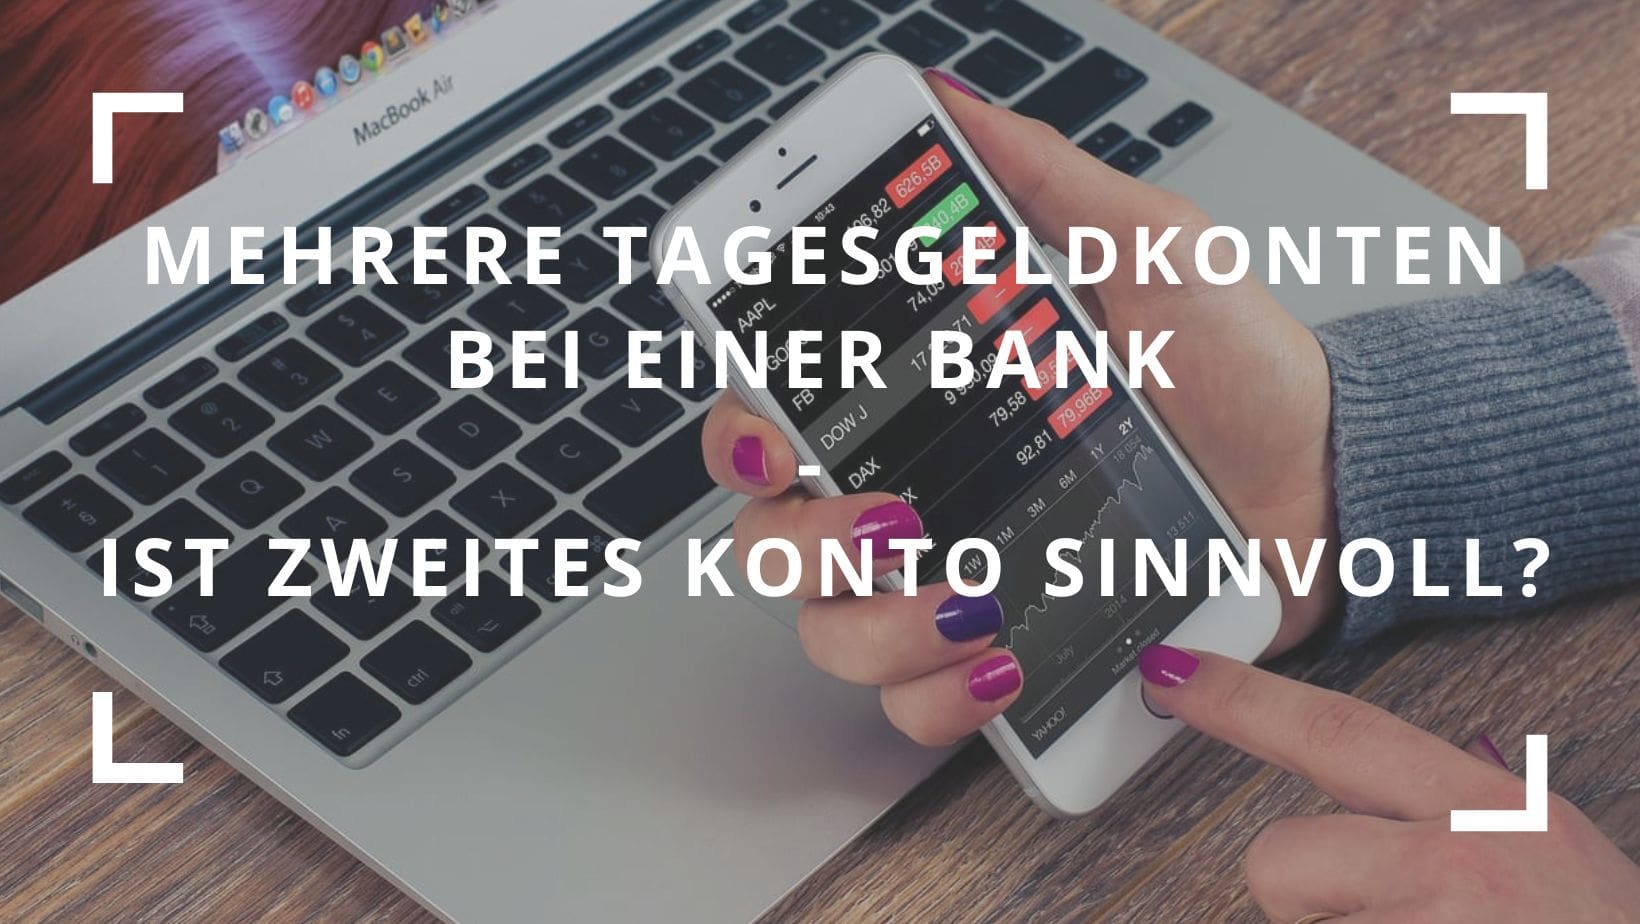 Titelbild zum Blogbeitrag "Mehrere Tagesgeldkonten bei einer Bank - Ist zweites Konto sinnvoll"